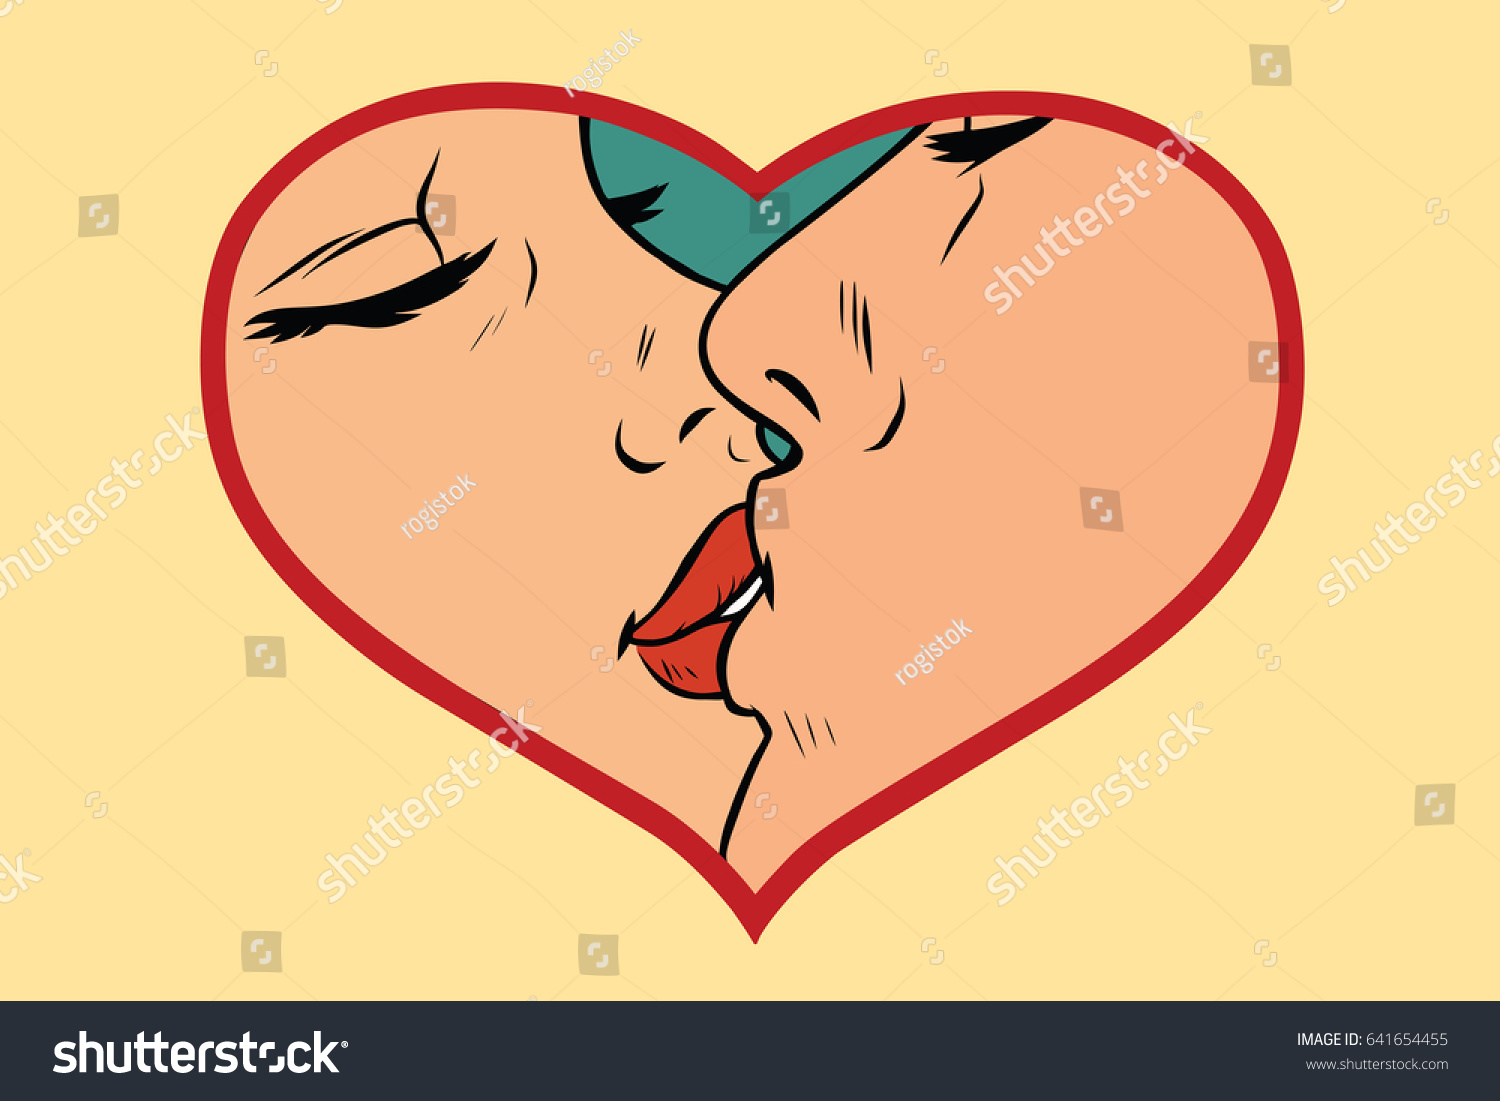 Карикатура поцелуя для женщины